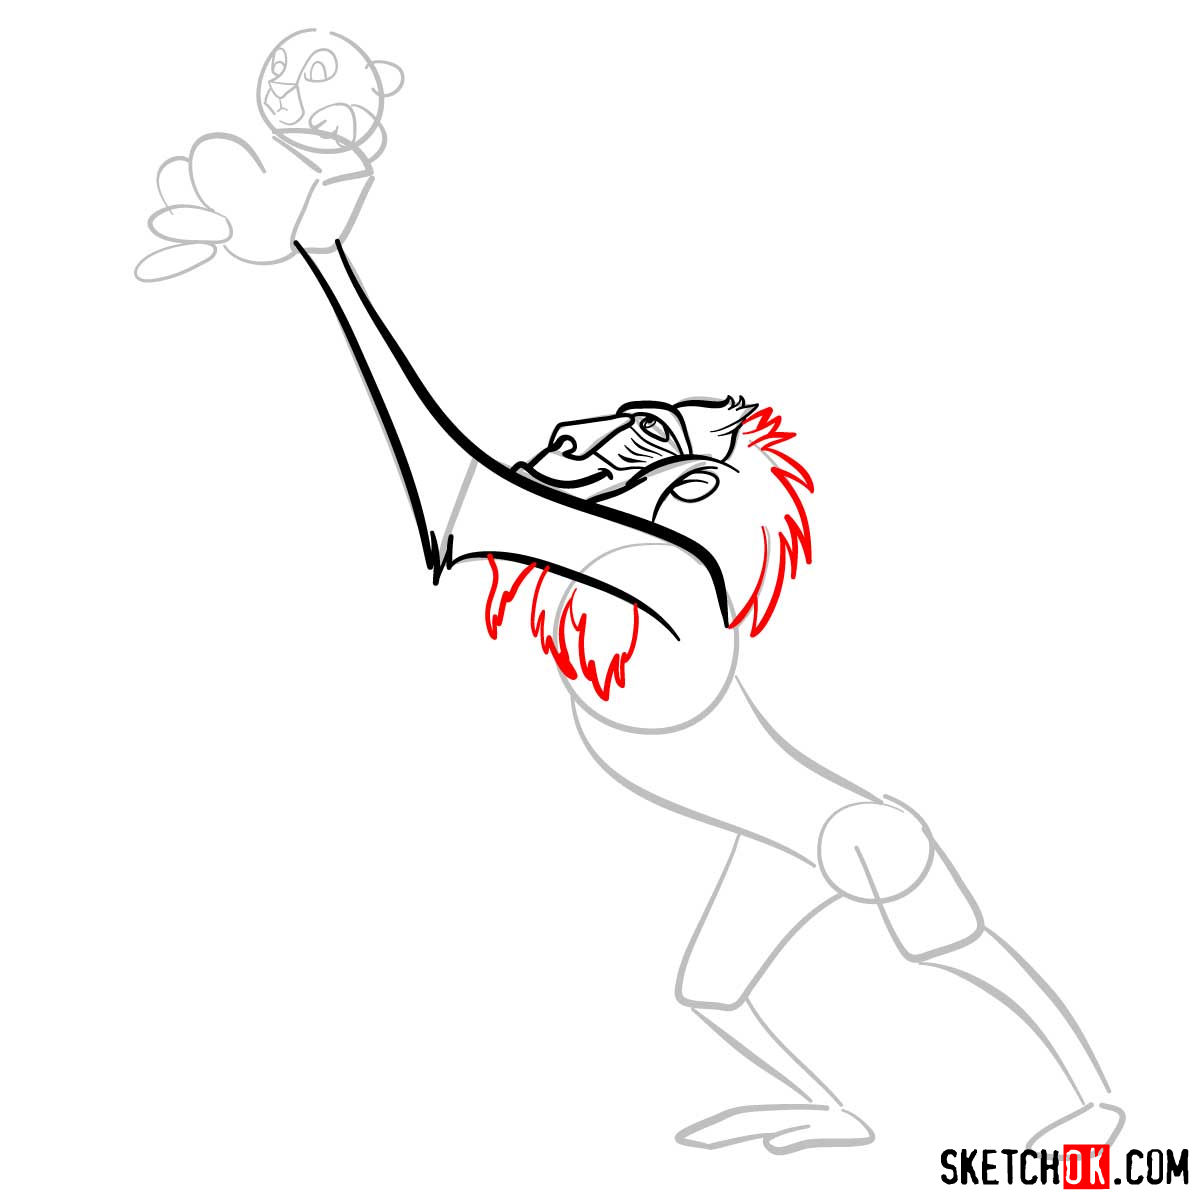 How to draw Rafiki holding Simba The Lion King Sketchok easy